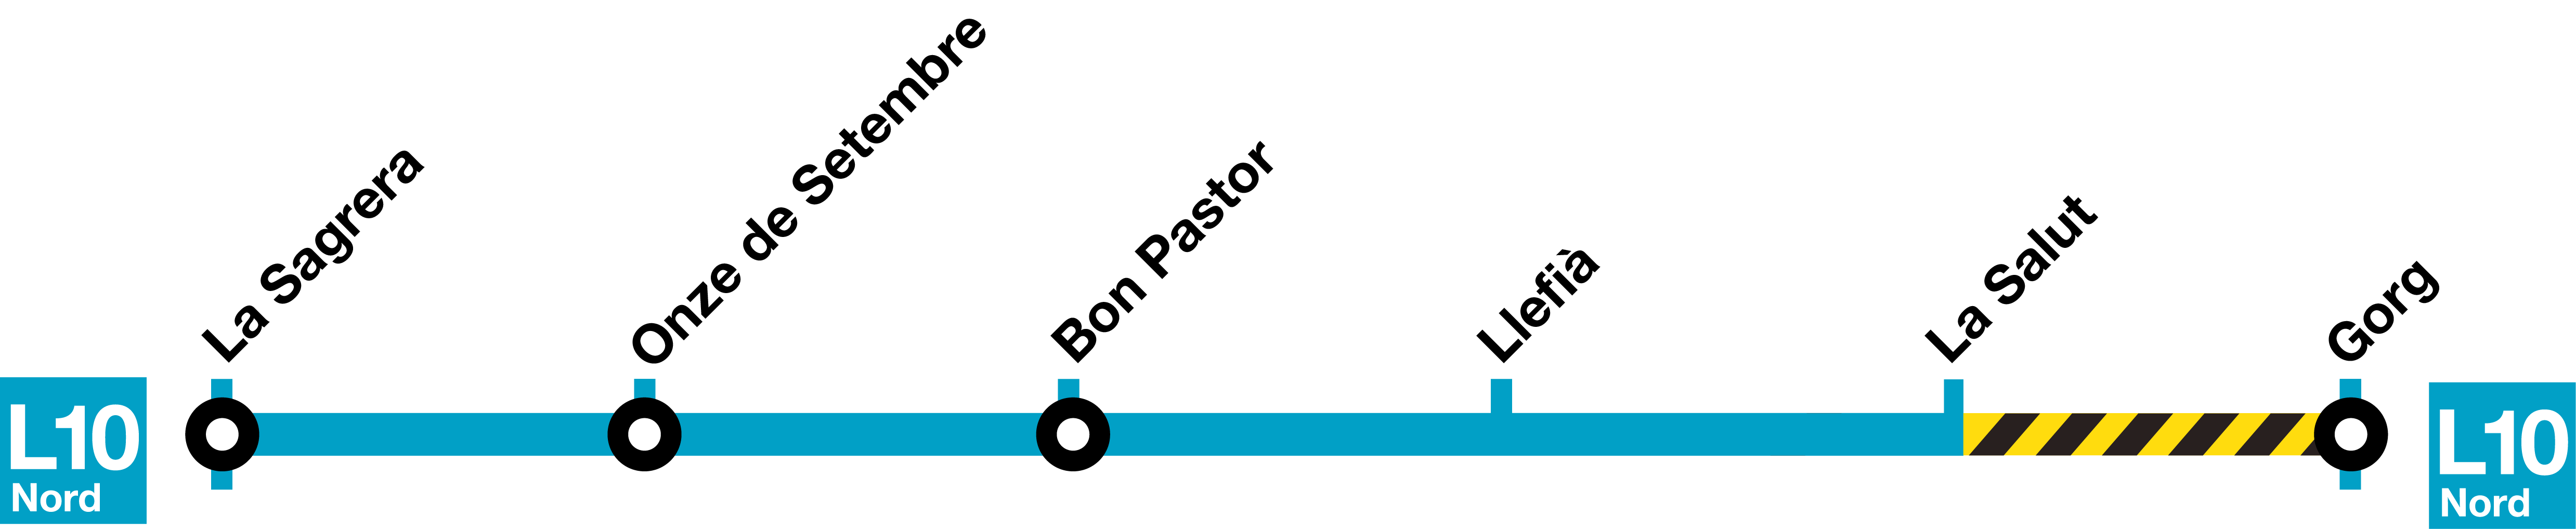 Termòmetre parcial de la L4 amb el tall que afectarà el servei de metro del 5 al 25 d'agost / TMB